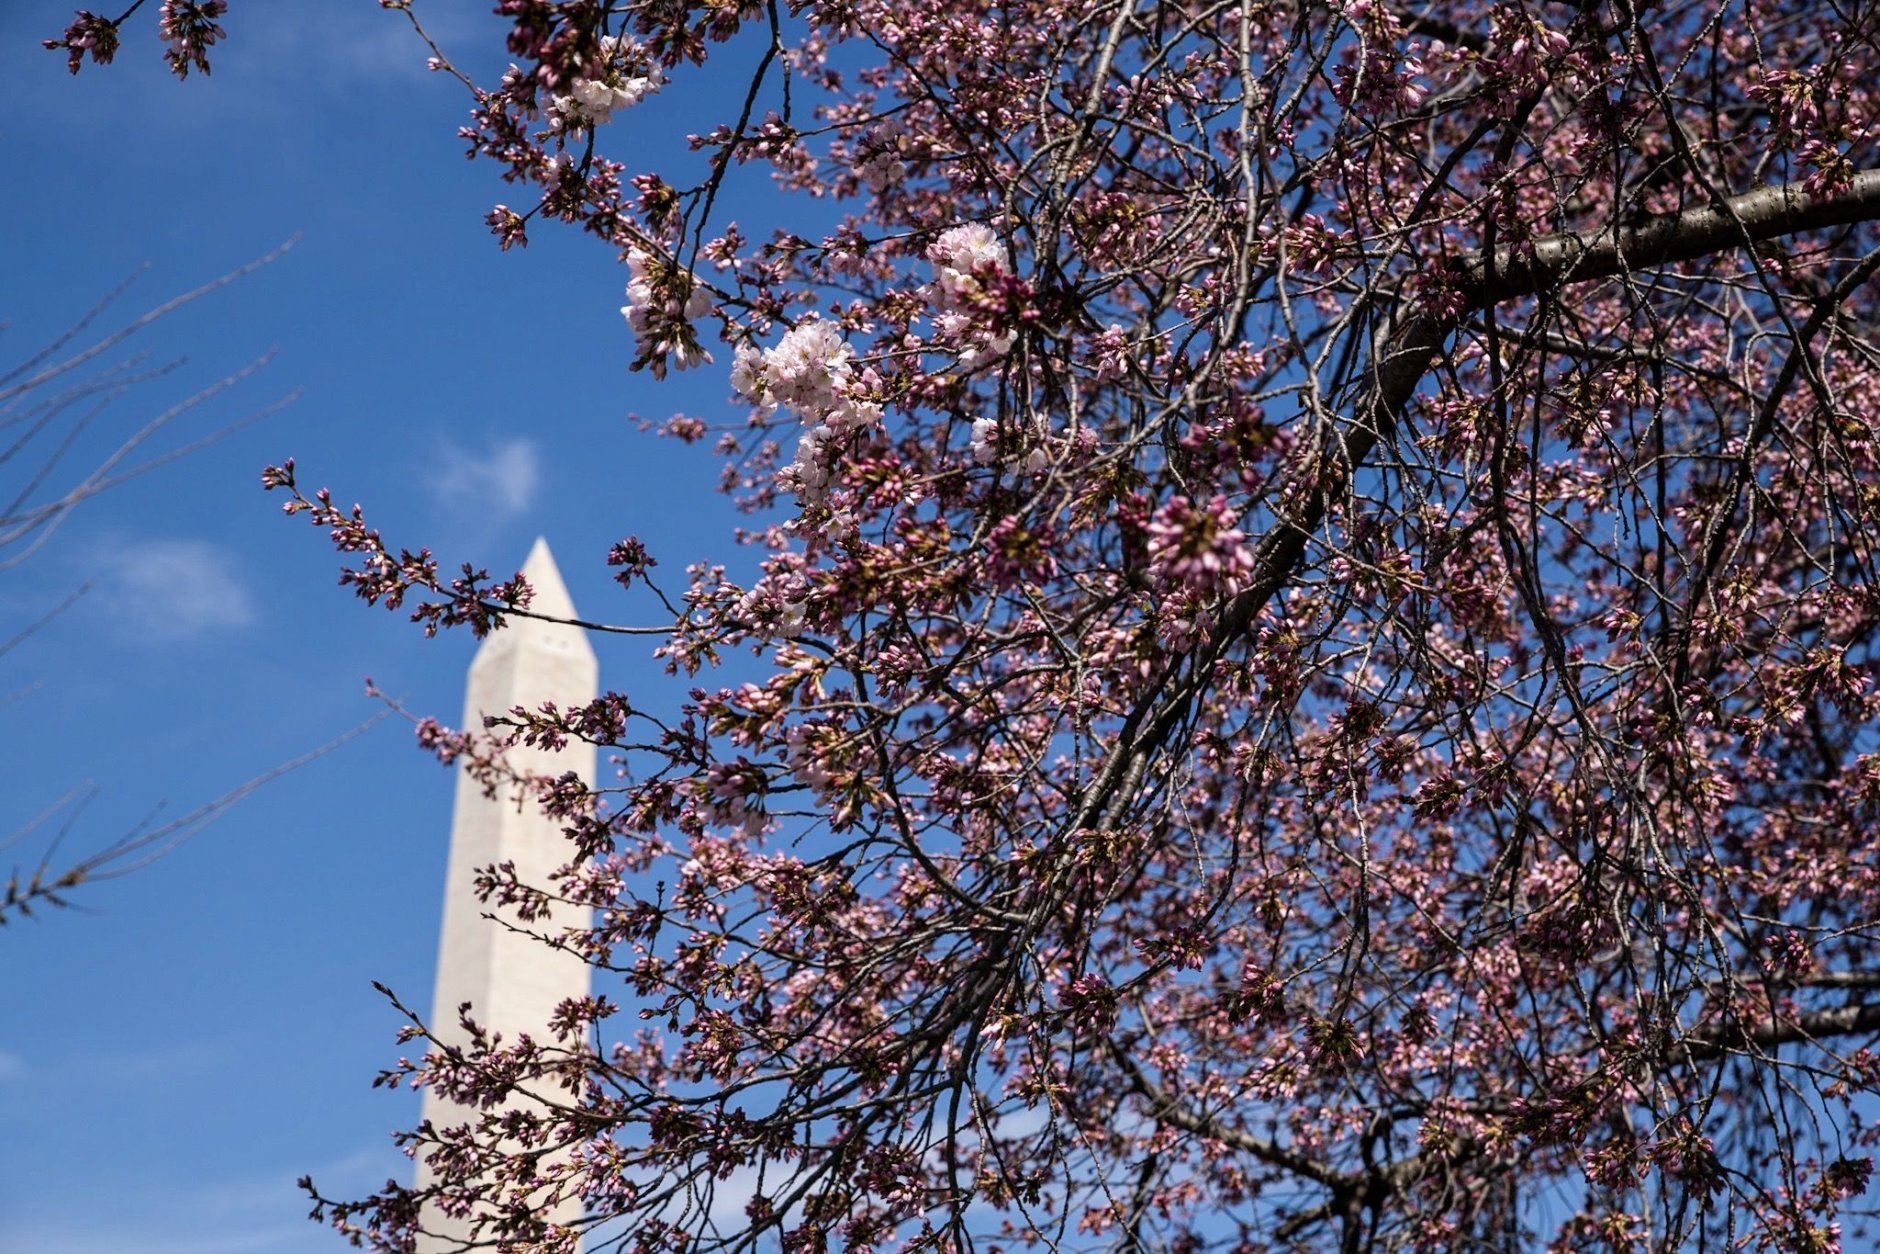 A tree full of cherry blossom florets ready to burst on March 28. (WTOP/Alejandro Alvarez)